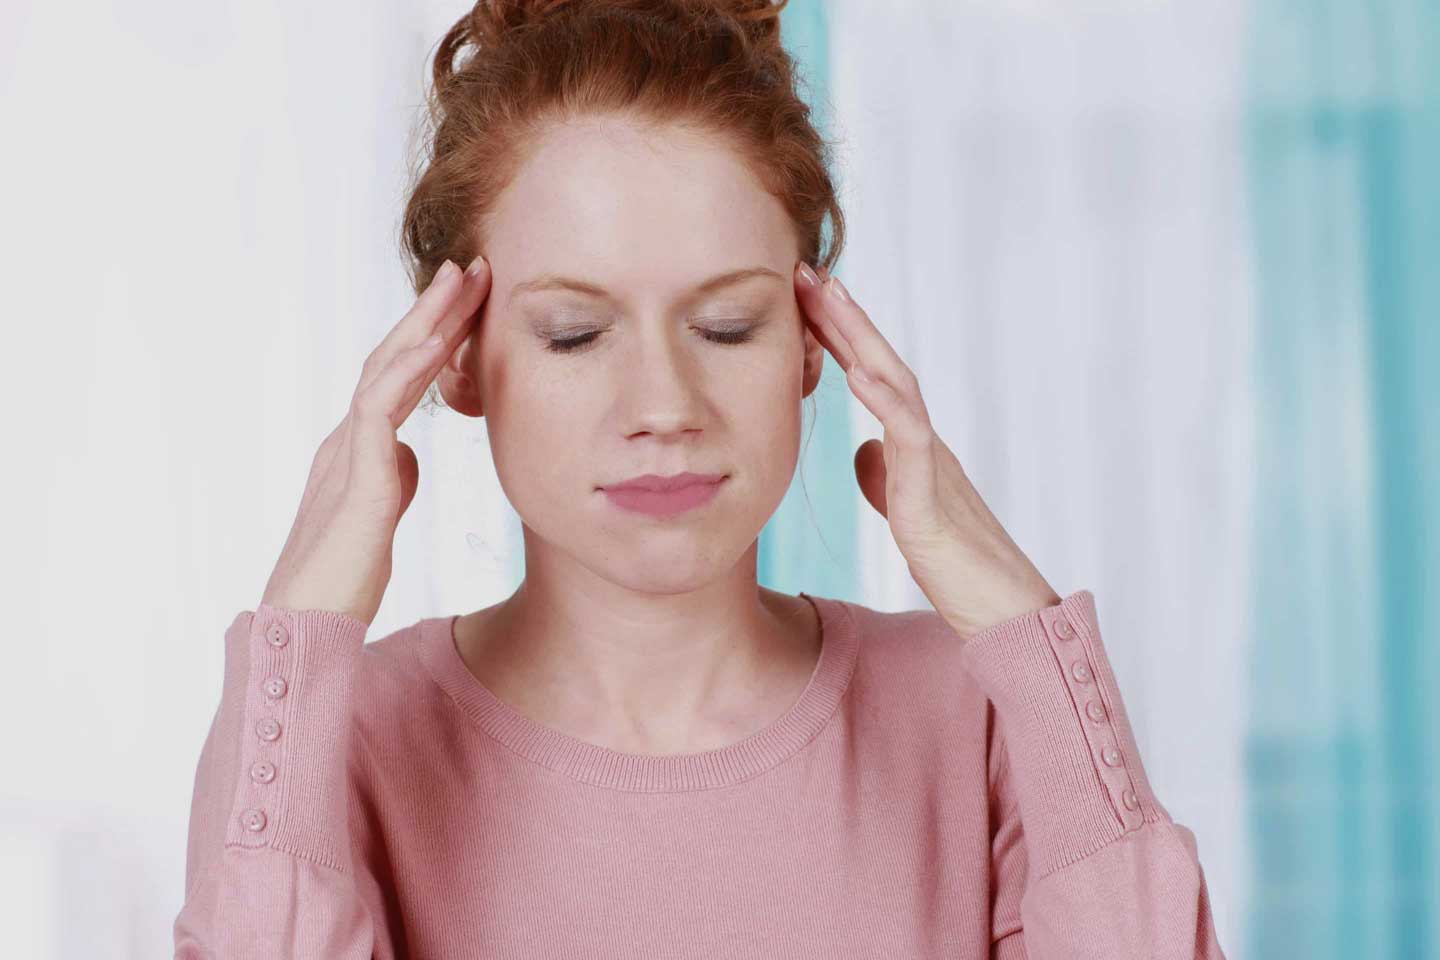 Pre-migraine symptoms